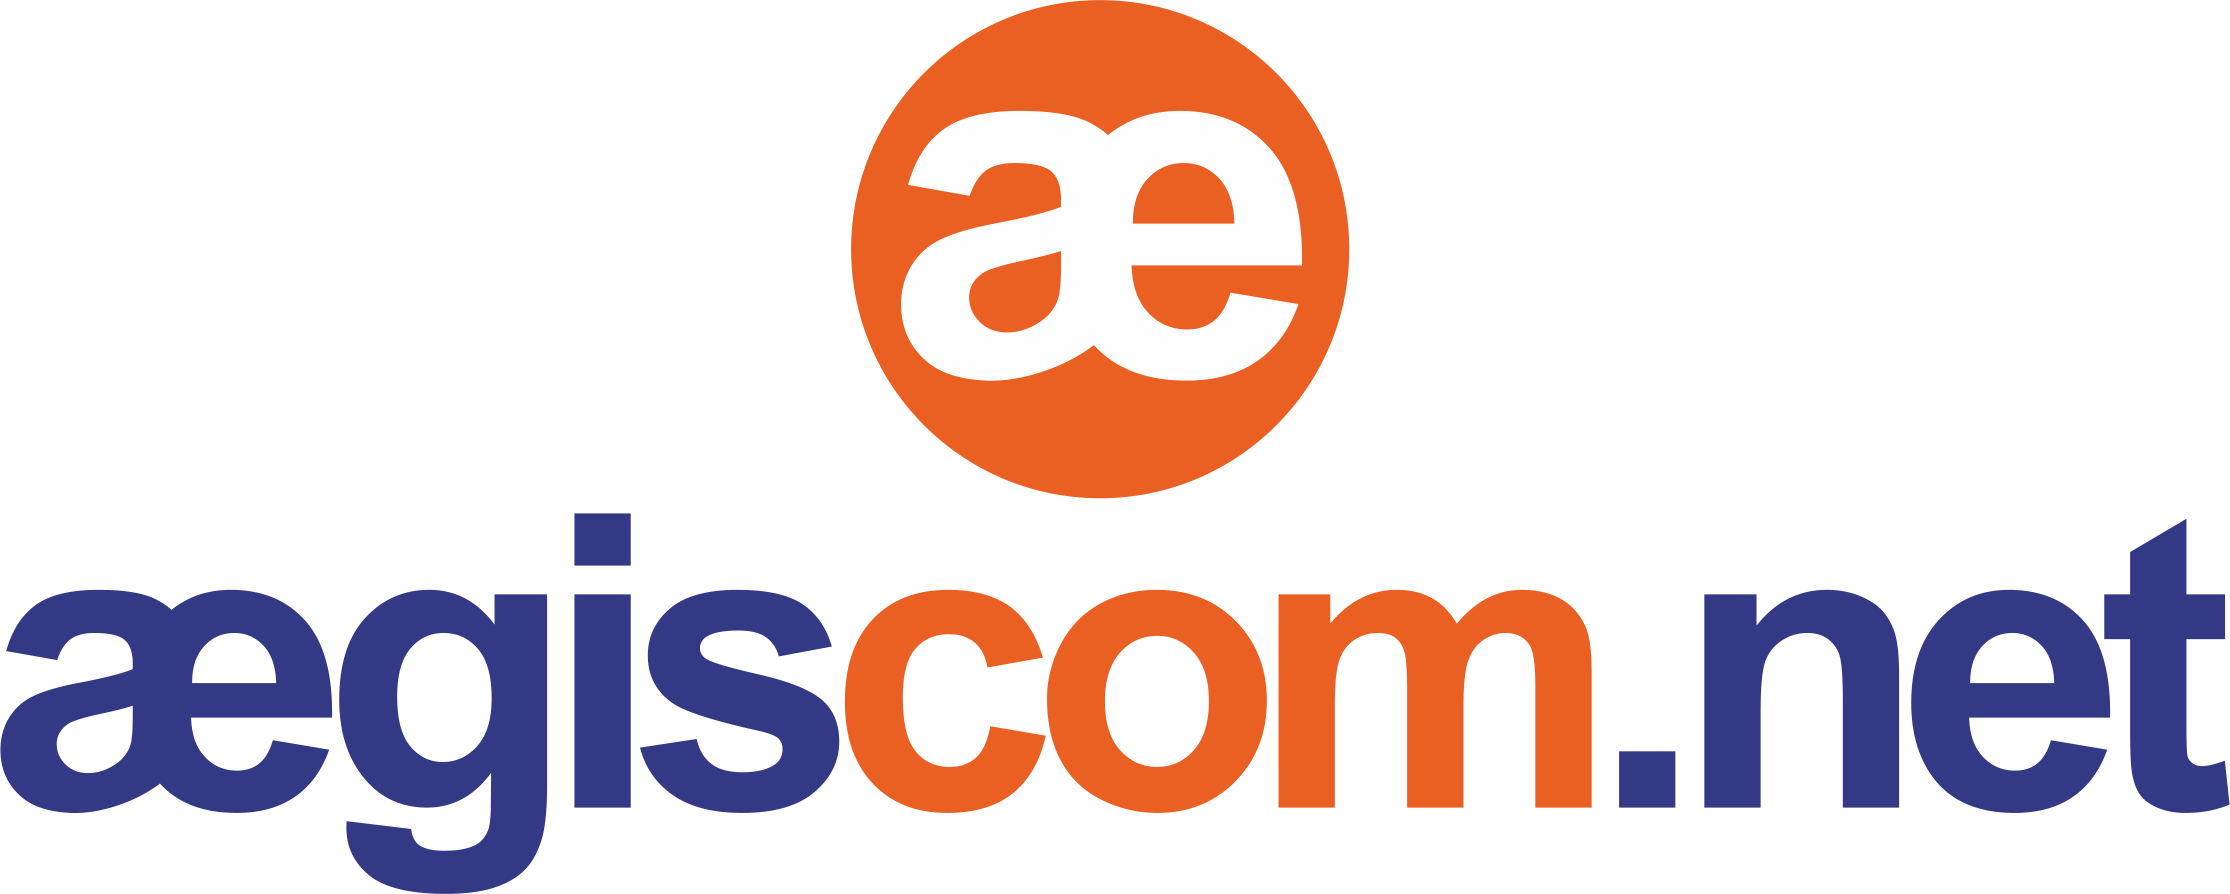 logo-mobile-aegiscom